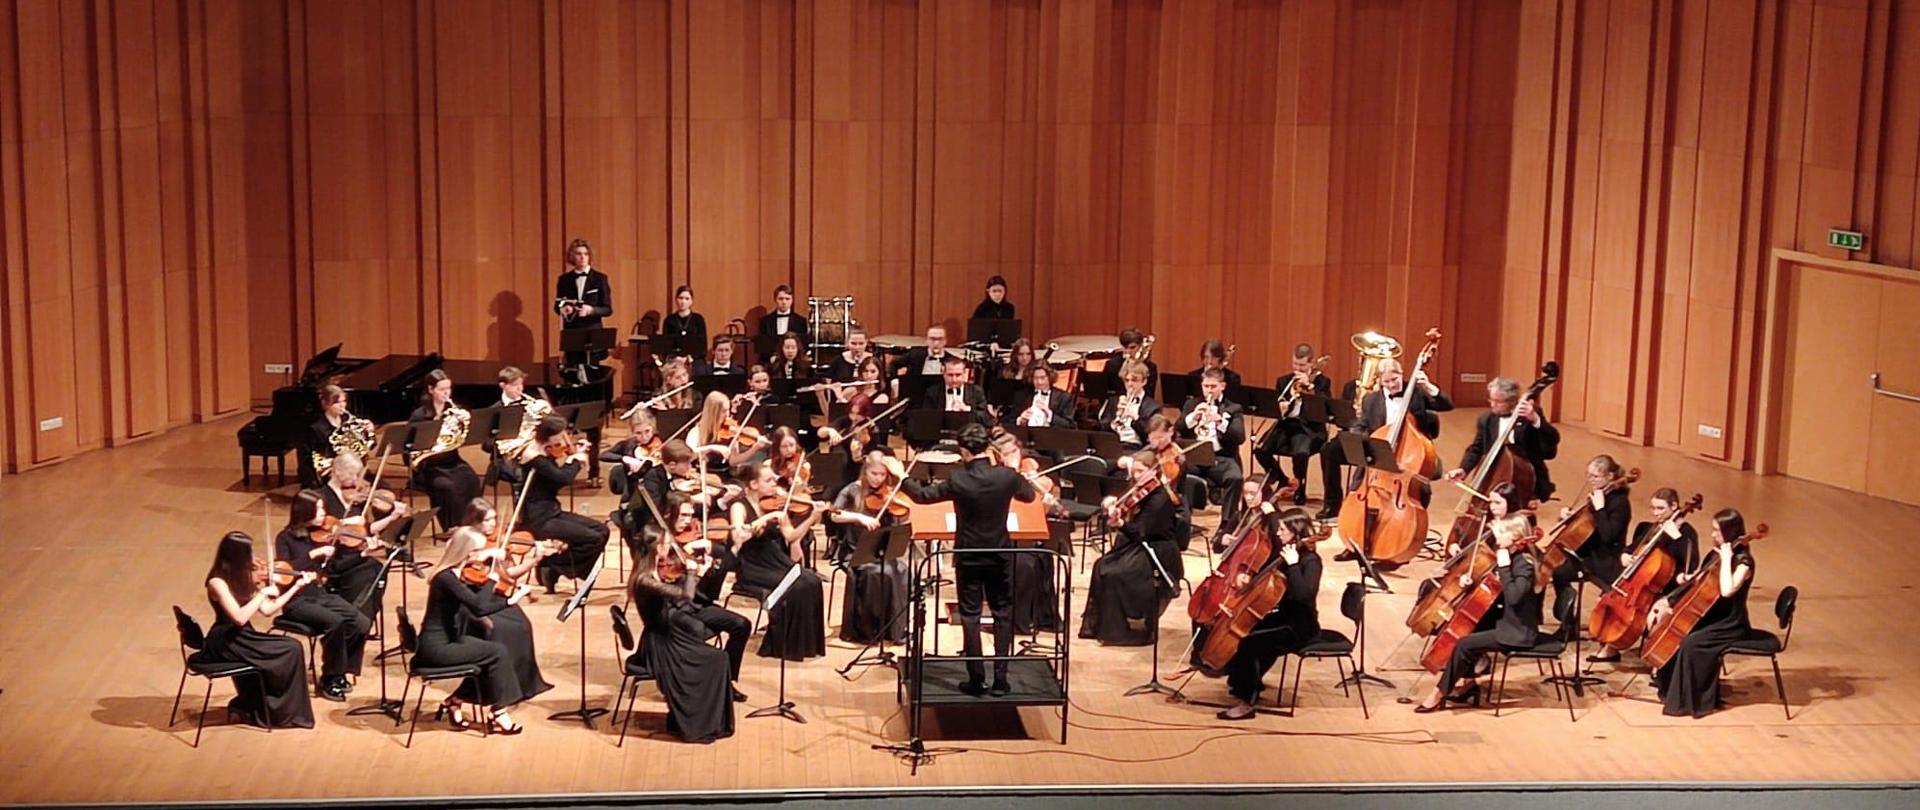 Na scenie Polska Młodzieżowa Orkiestra Symfoniczna pod dyrekcją Filipa Hugeta